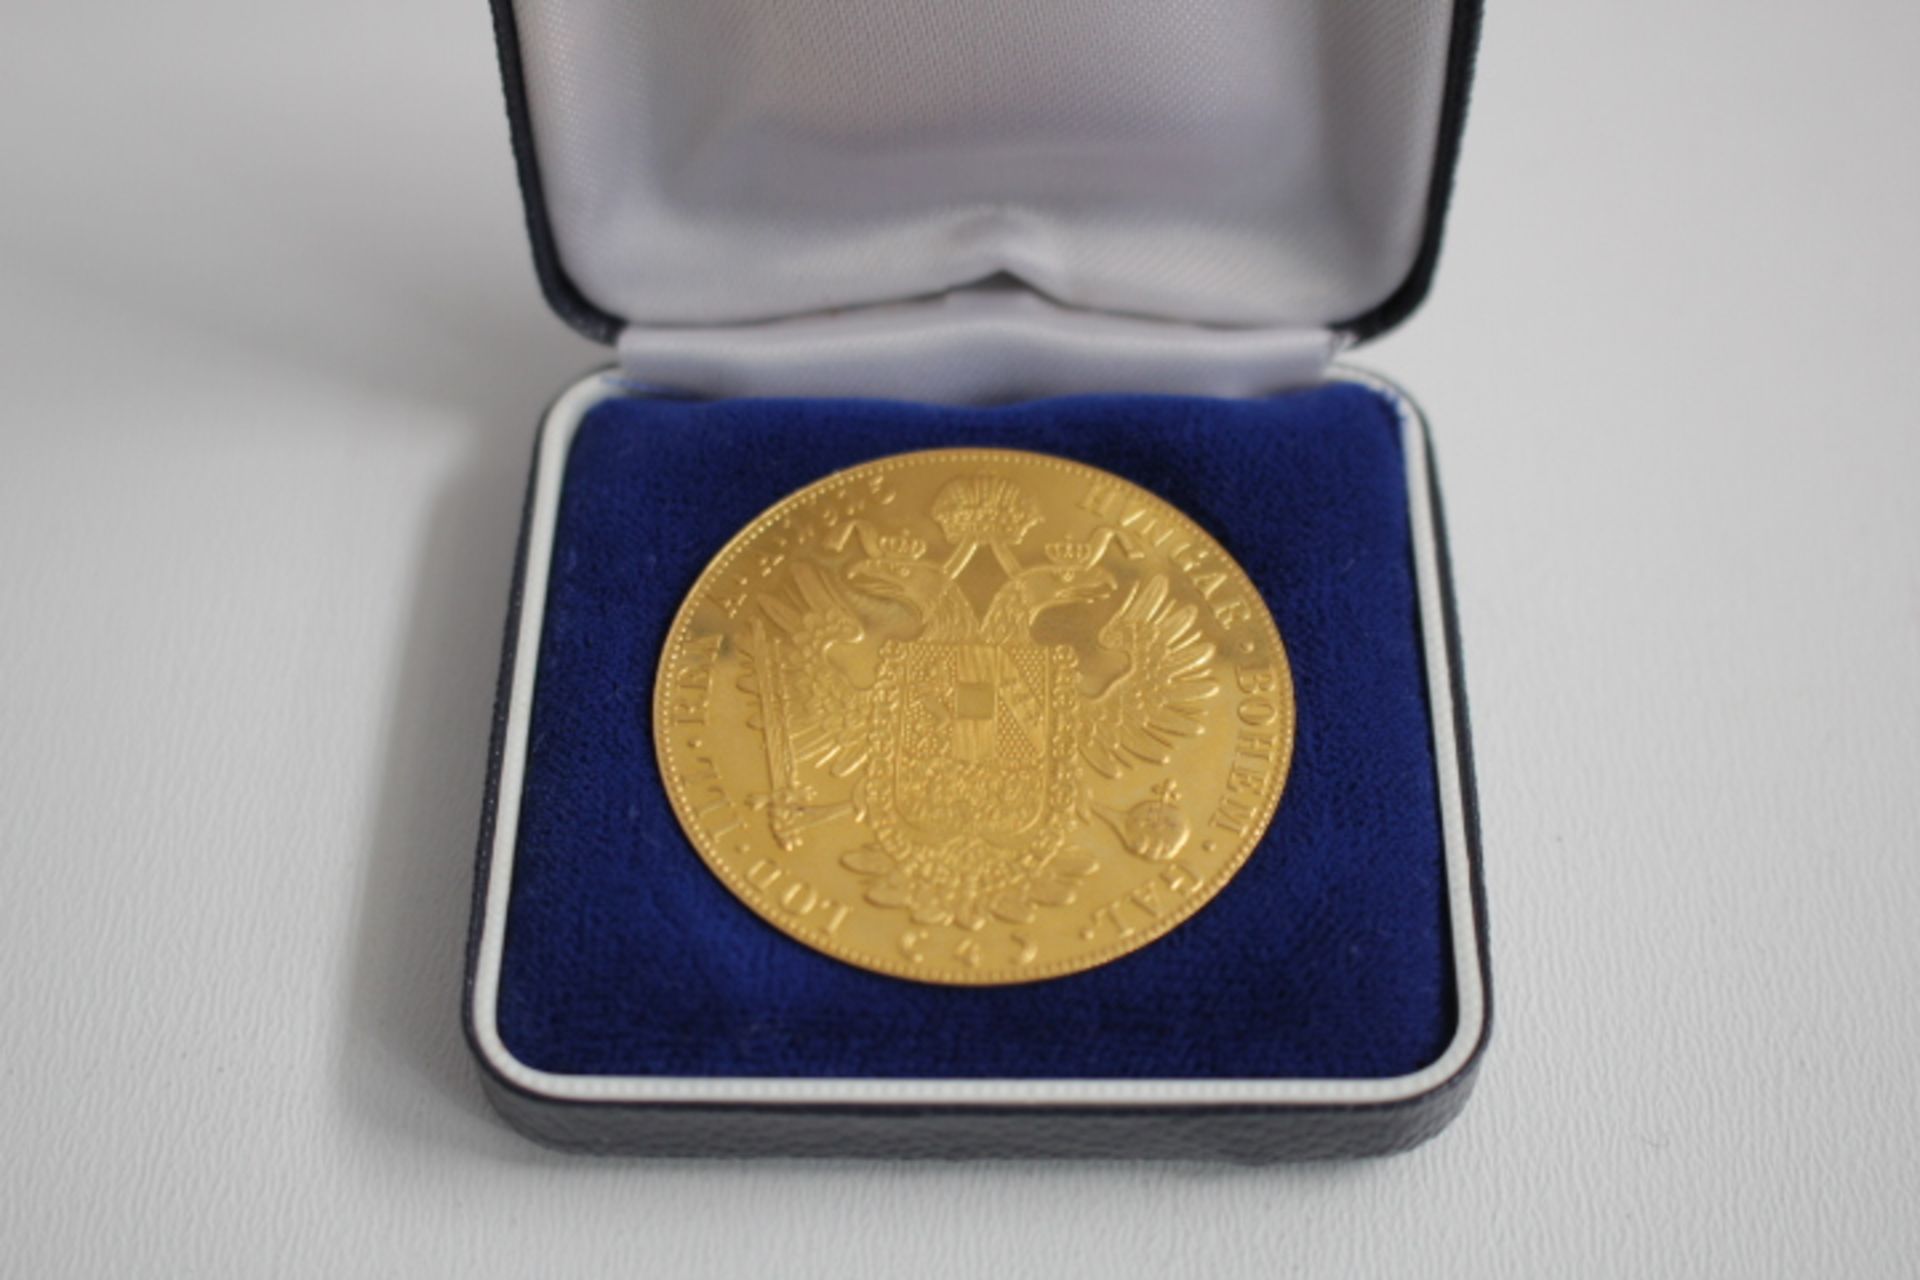 Goldmünze Österreich - Bild 2 aus 2